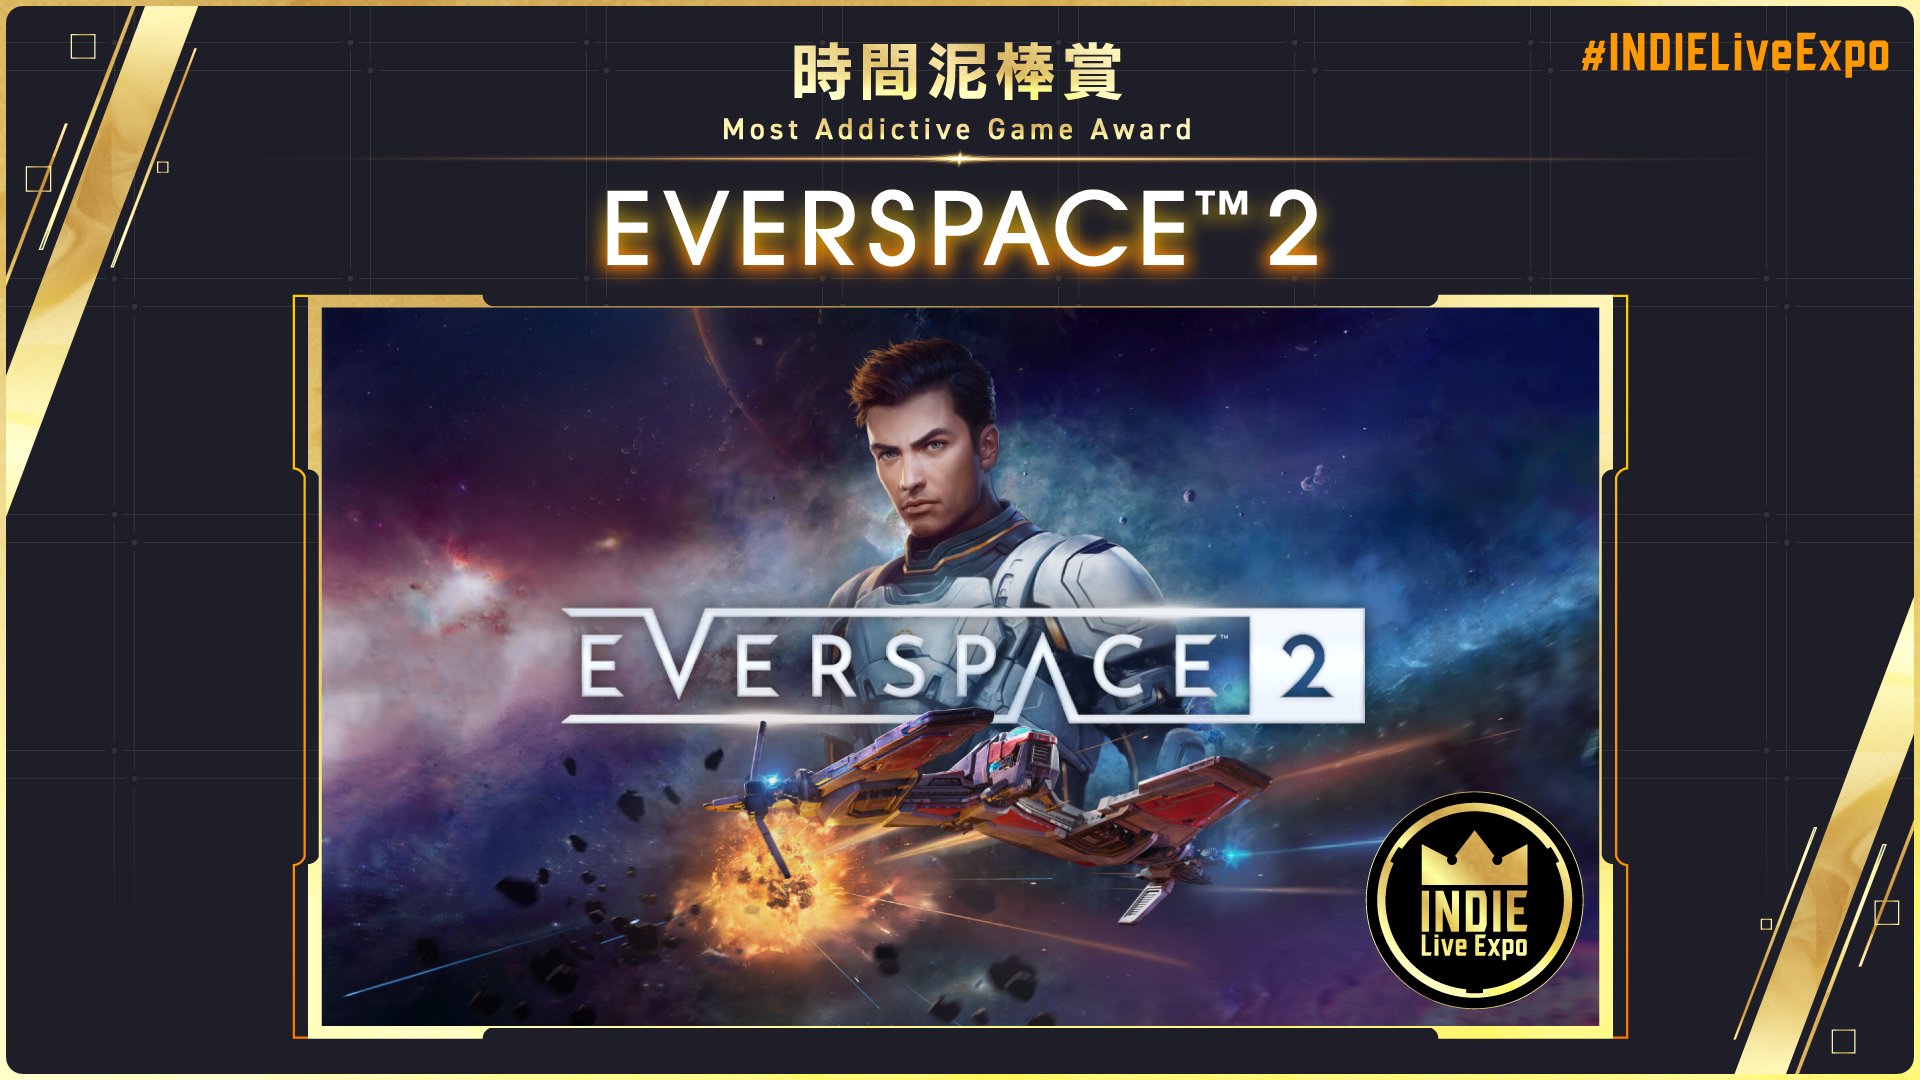 EVERSPACE 2 Achievements - Steam 